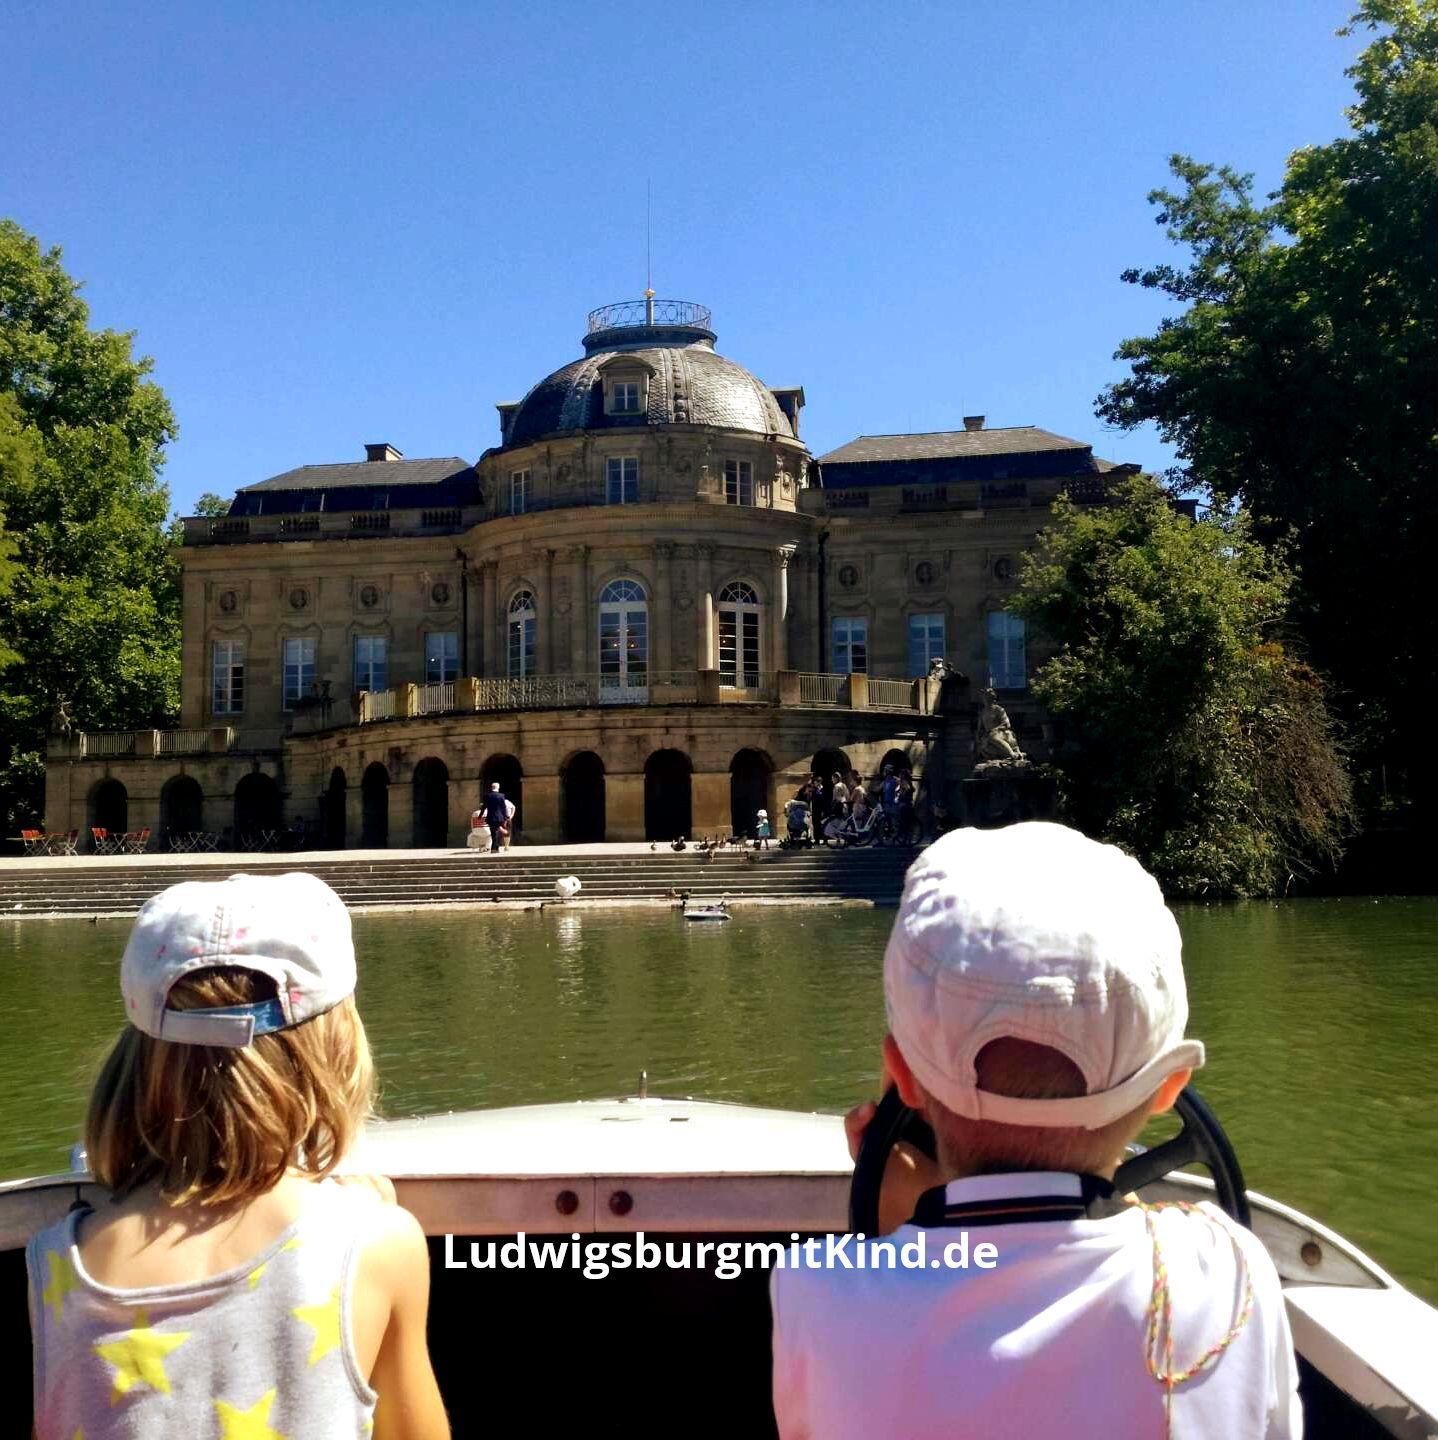 Kinder im Treetboot vor dem Seeschloss Monrepos in Ludwigsburg, ein beliebtes Ausflugsziel für Familien.